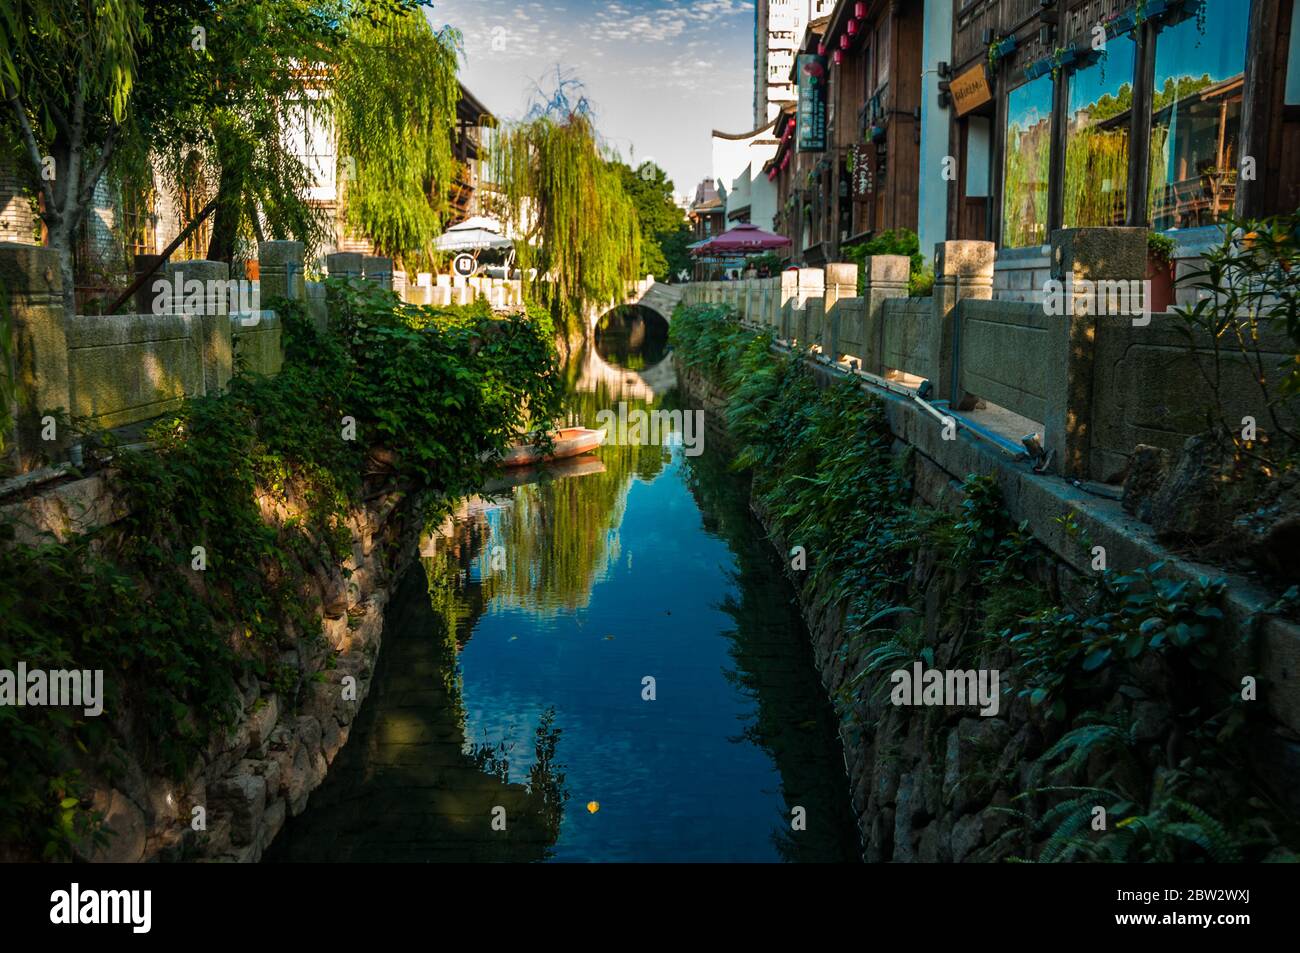 Eine Wasserstraße in die drei Fahrspuren sieben Gassen Altstadt der Stadt Fuzhou in der Provinz Fujian China. Stockfoto